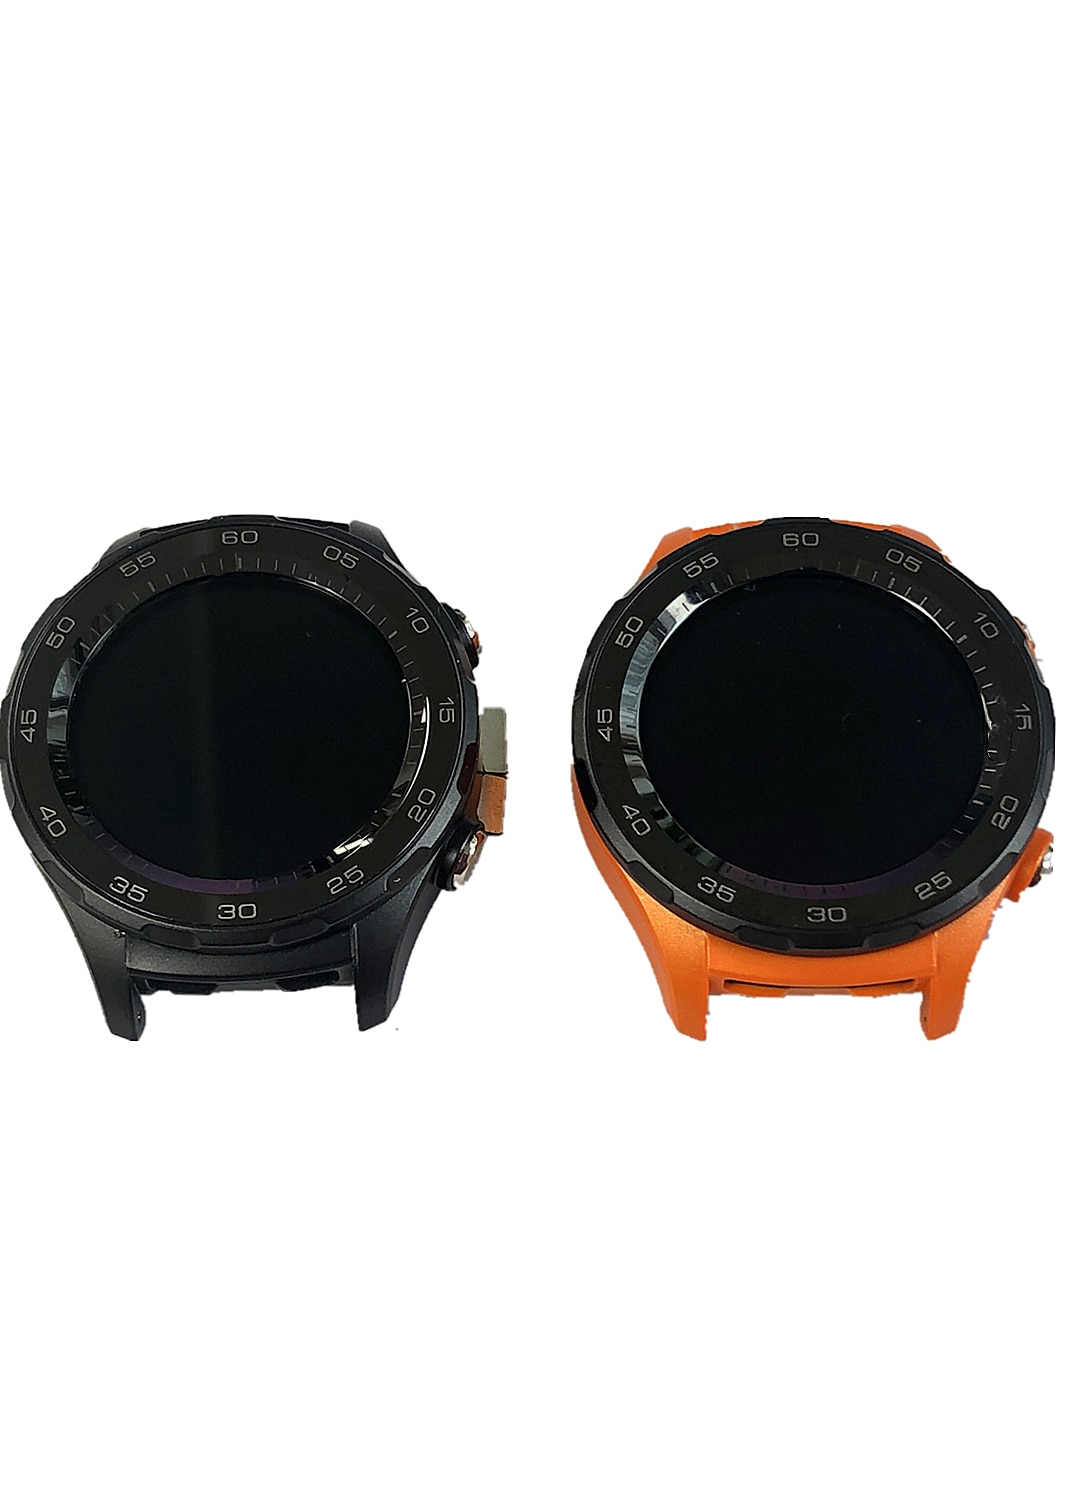 Für Huawei uhr 2 smartwatch LCD + berühren Bildschirm in sterben rahmen rahmen bildschirm reparatur und Ersatz